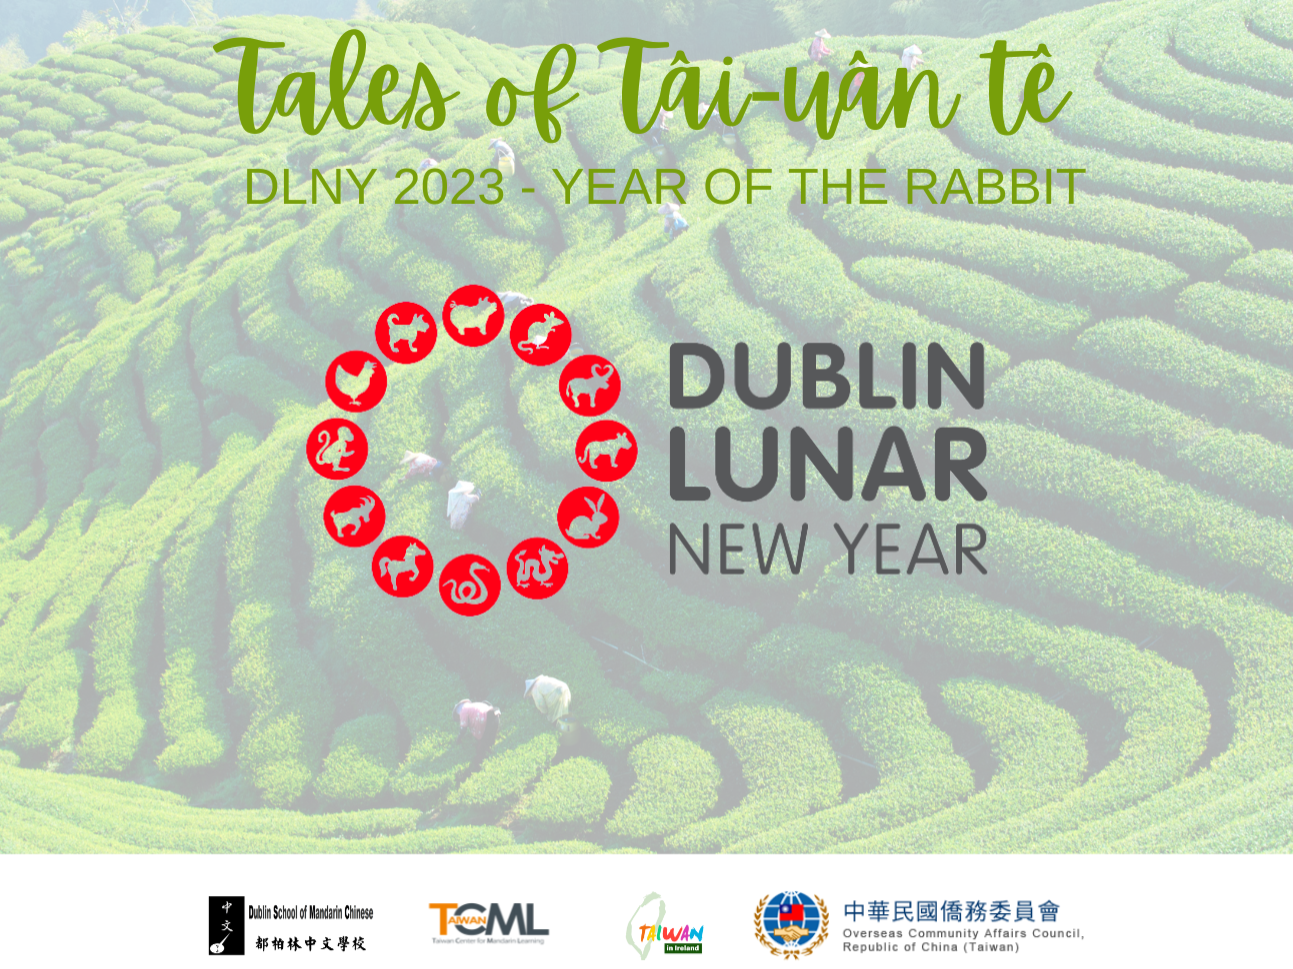 都柏林農曆新年2023 - 臺灣茶的故事圖片